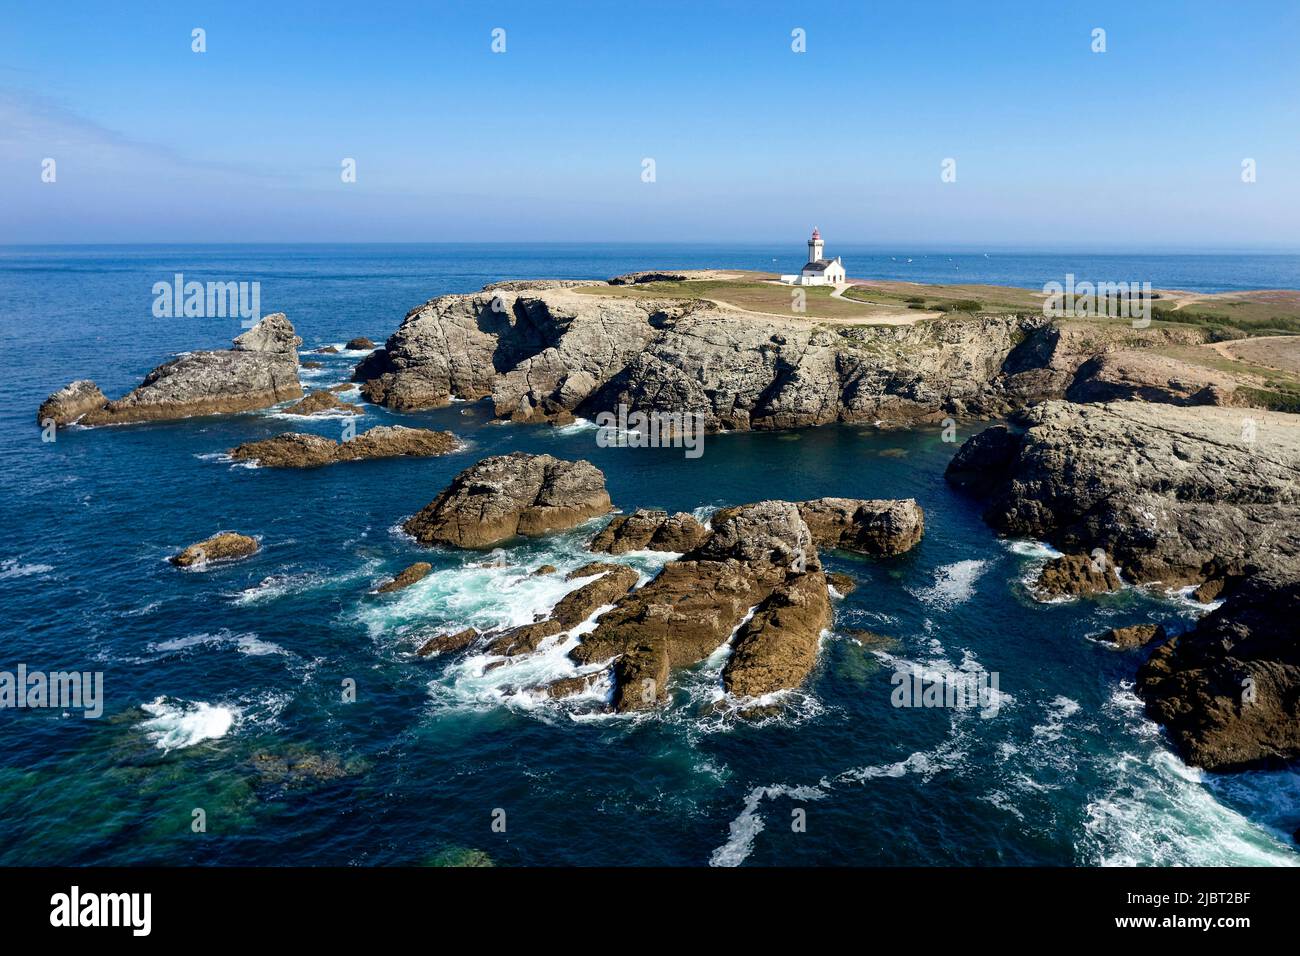 France, Morbihan, Belle Ile en mer, Sauzon, The Pointe des Poulains, the lighthouse (aerial view) Stock Photo